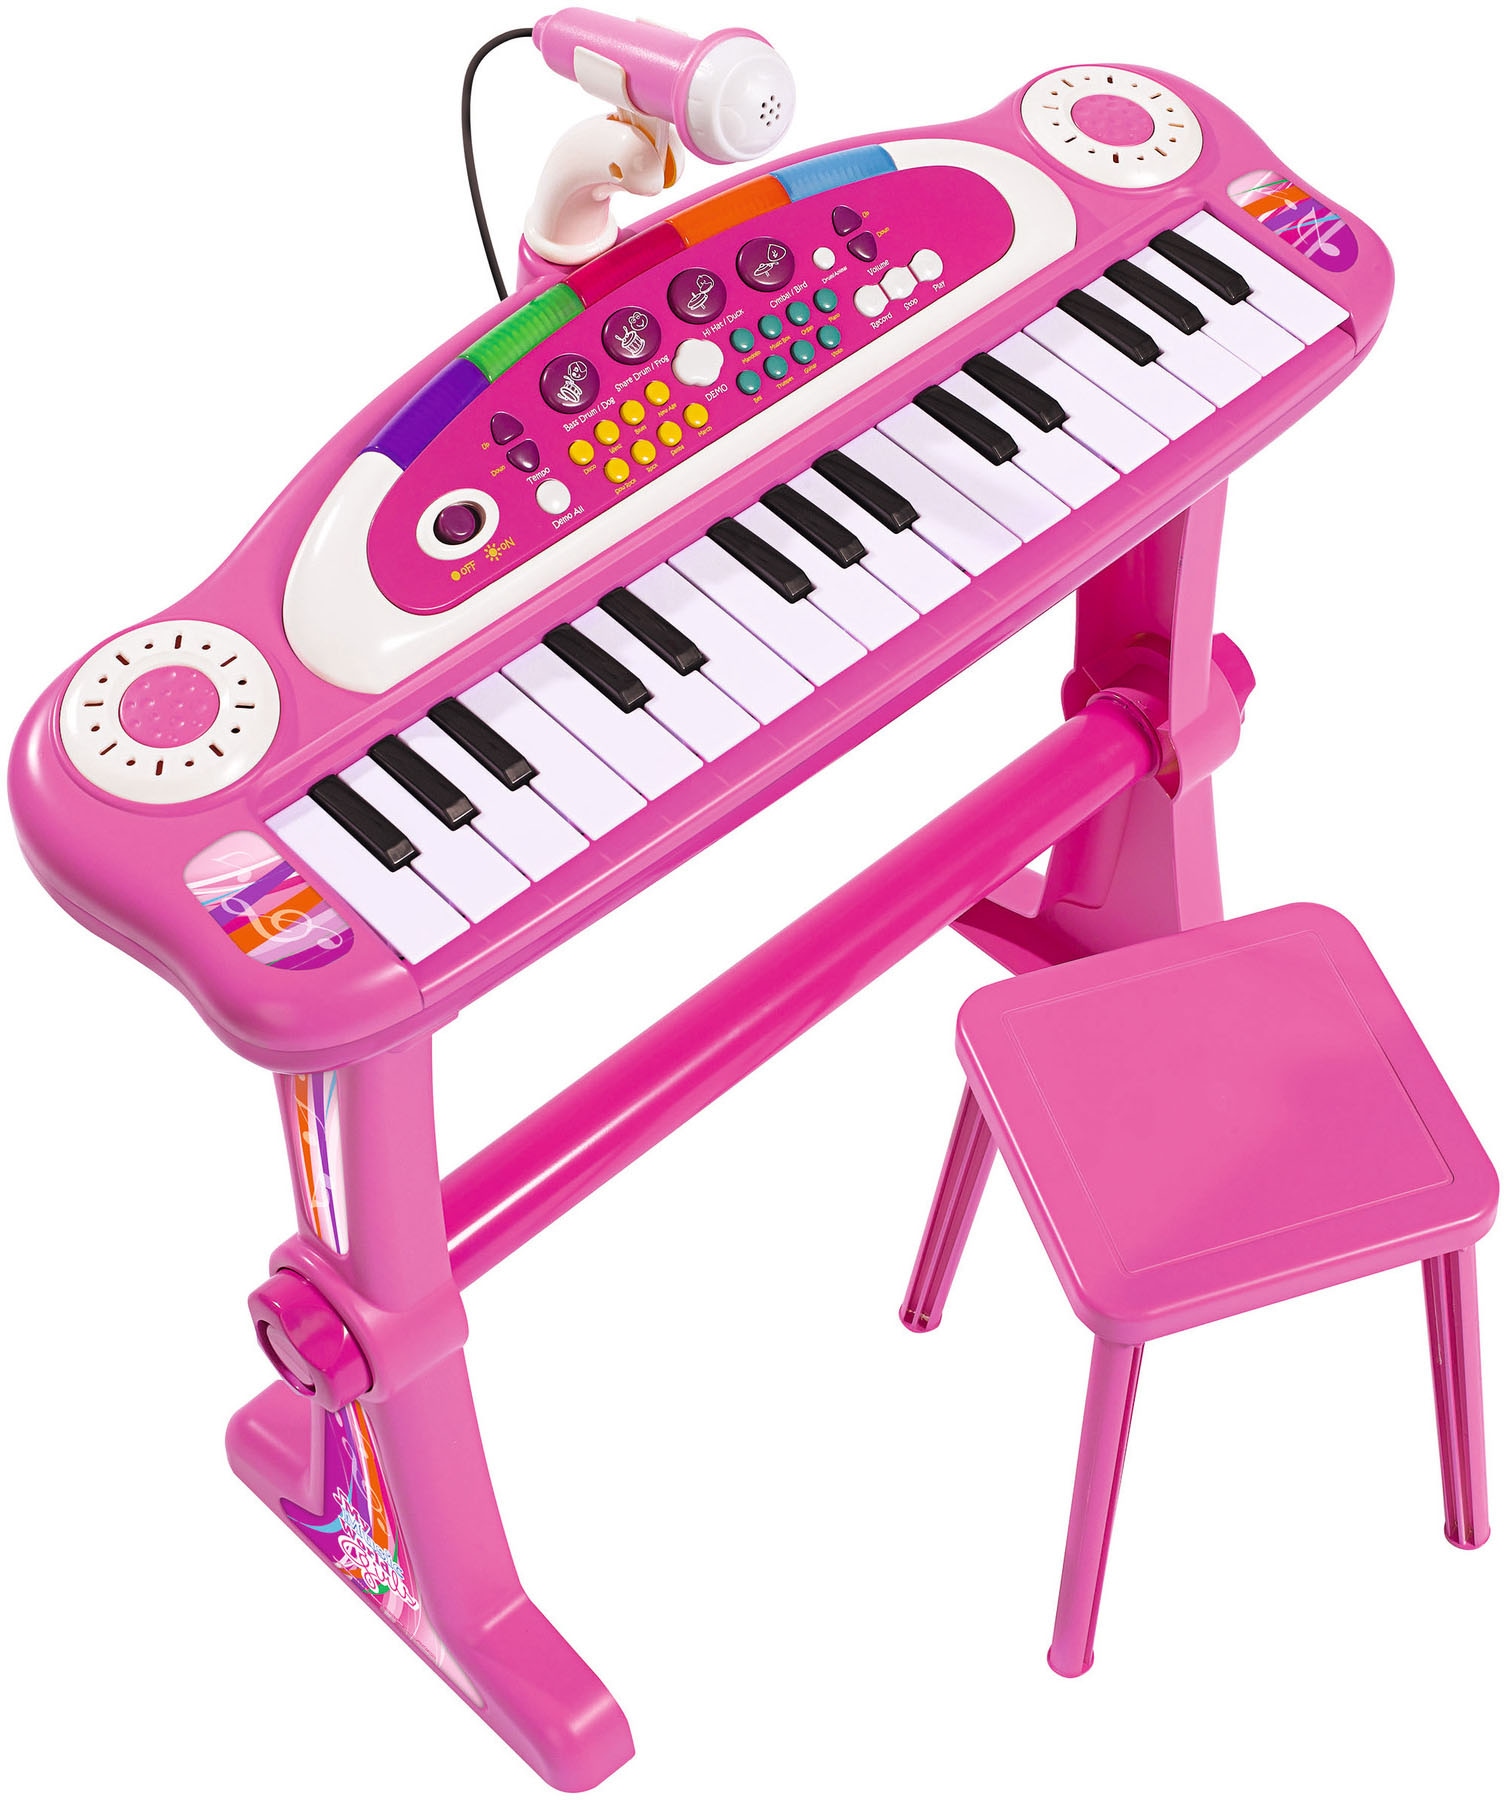 Spielzeug-Musikinstrument »My Music World Keyboard, pink«, mit Hocker und Mikrofon